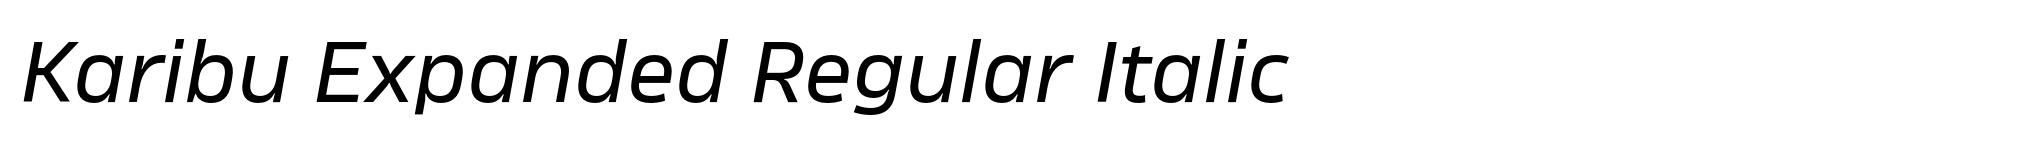 Karibu Expanded Regular Italic image